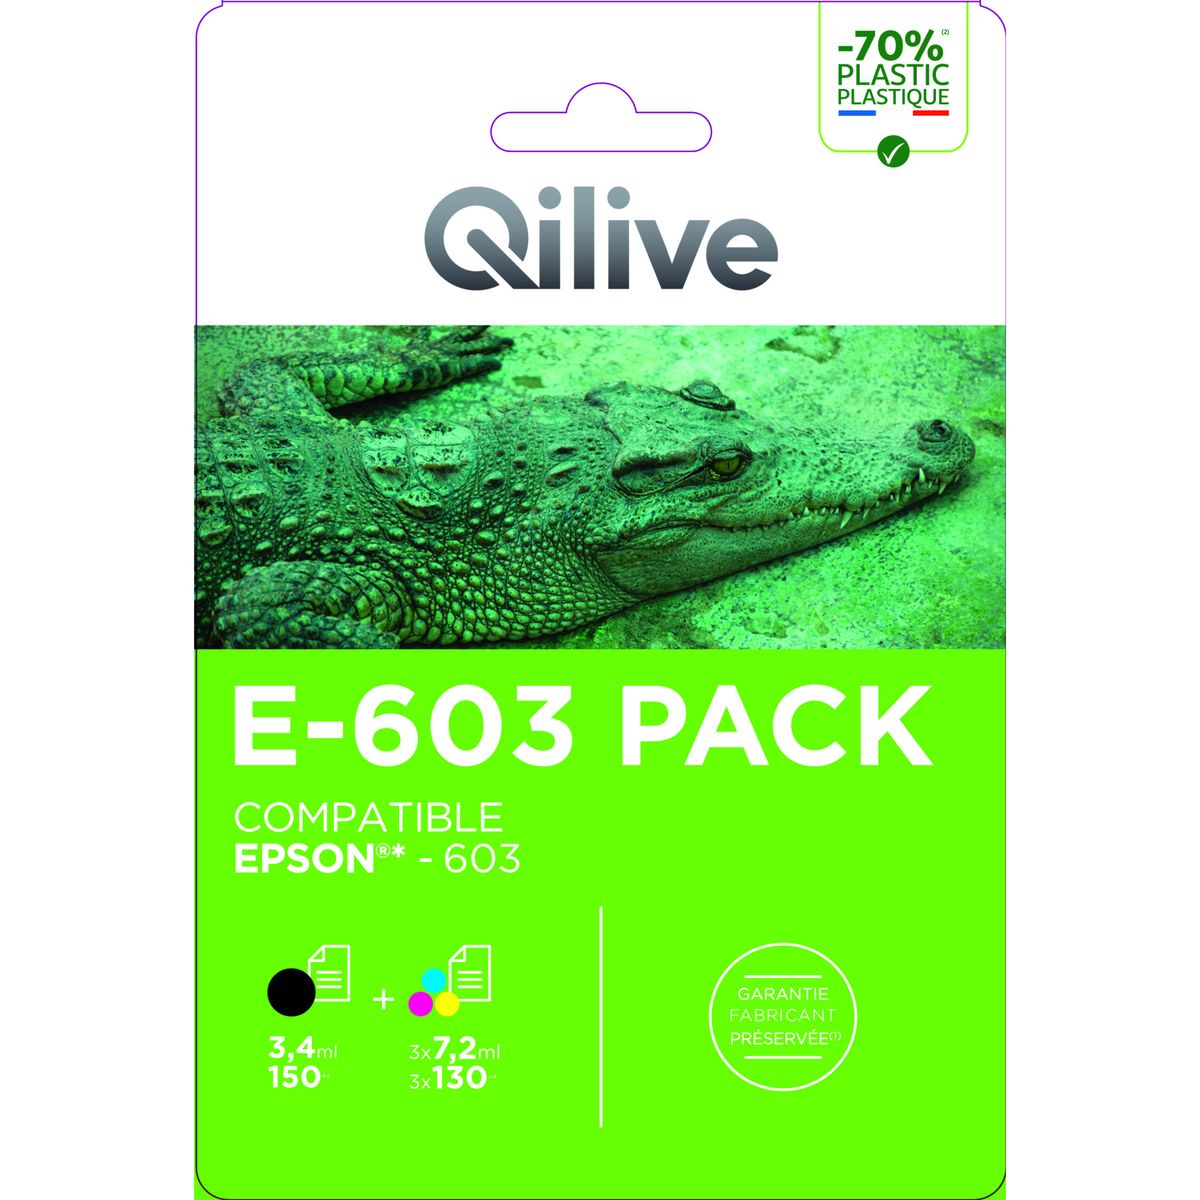 QILIVE Cartouche imprimante E-603 Pack 